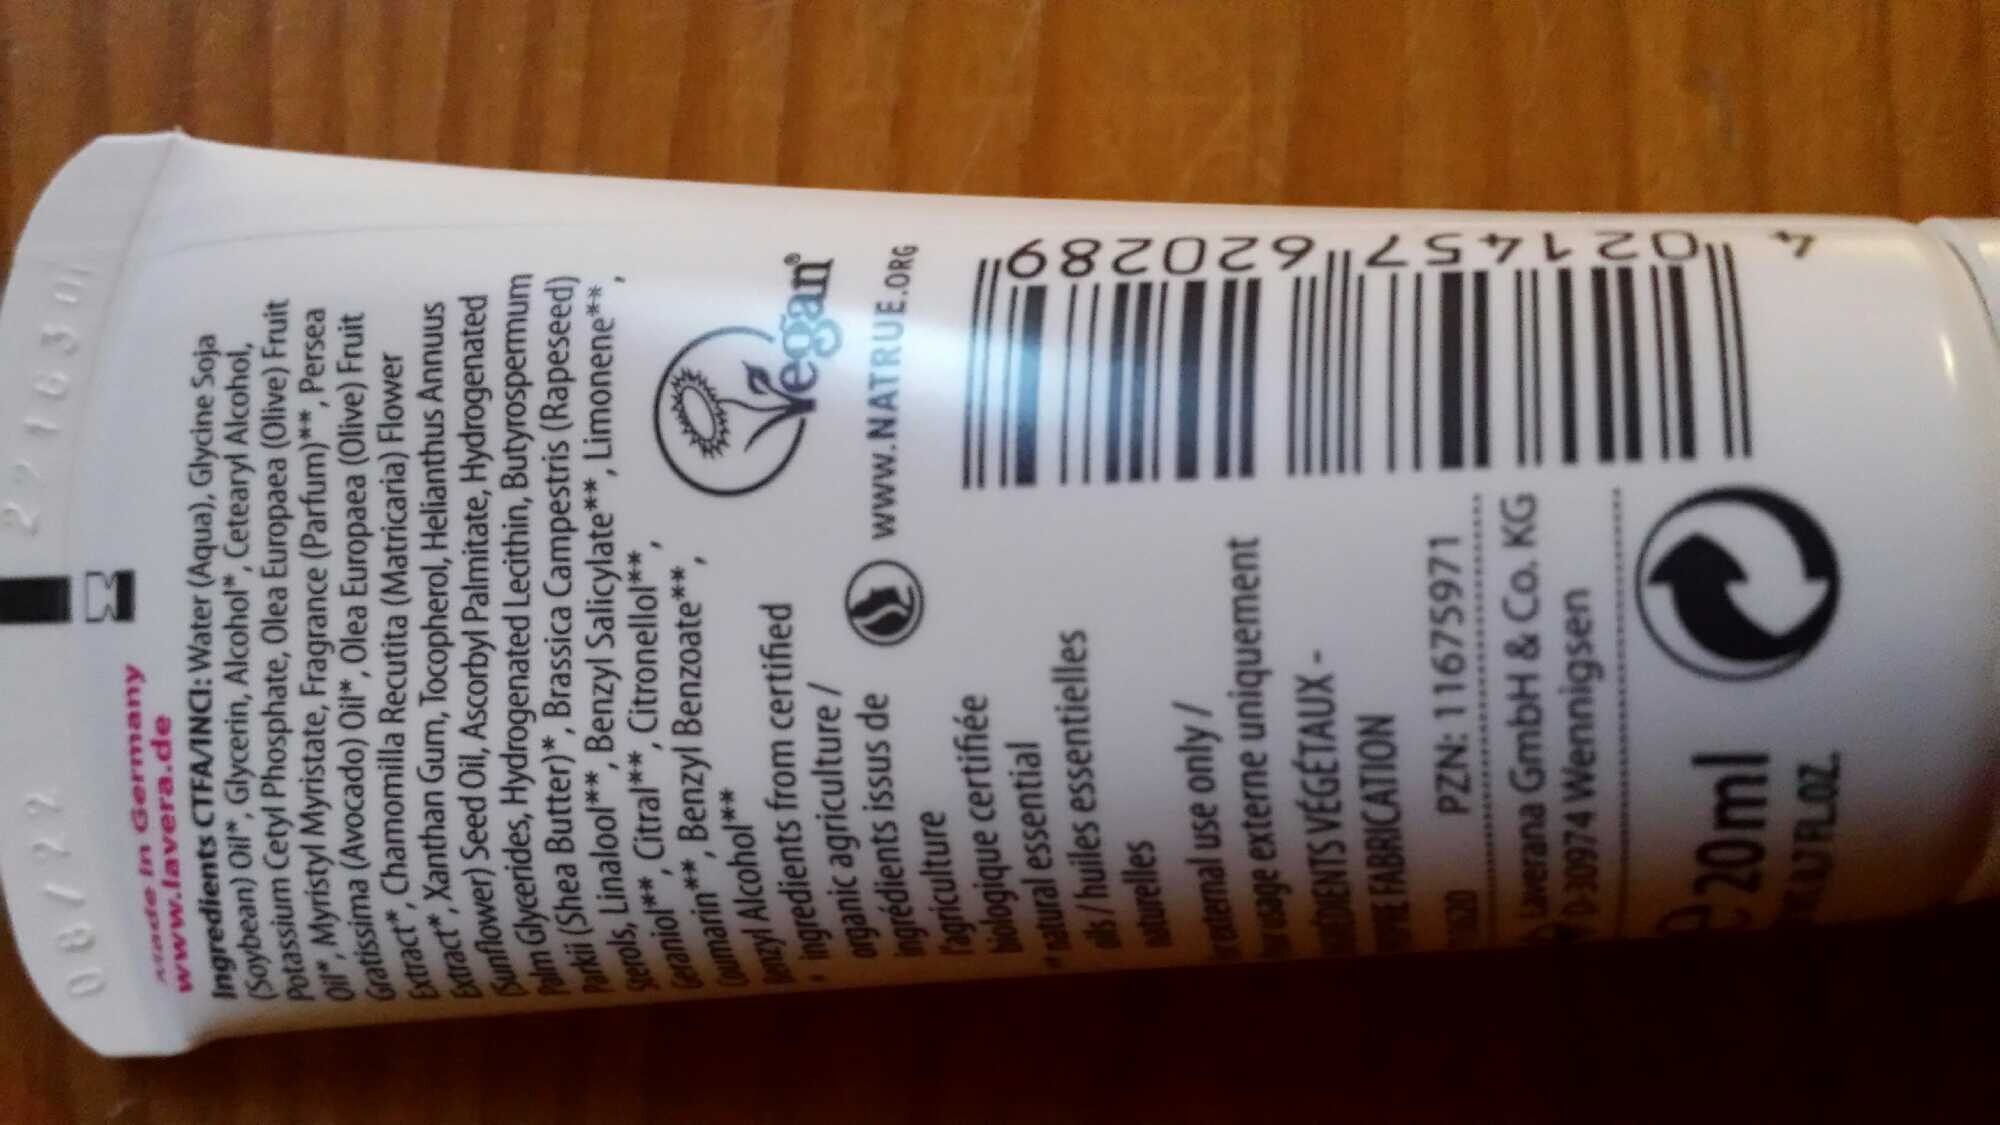 Crème mains et ongles huile d'olive et camomille bios - Product - fr